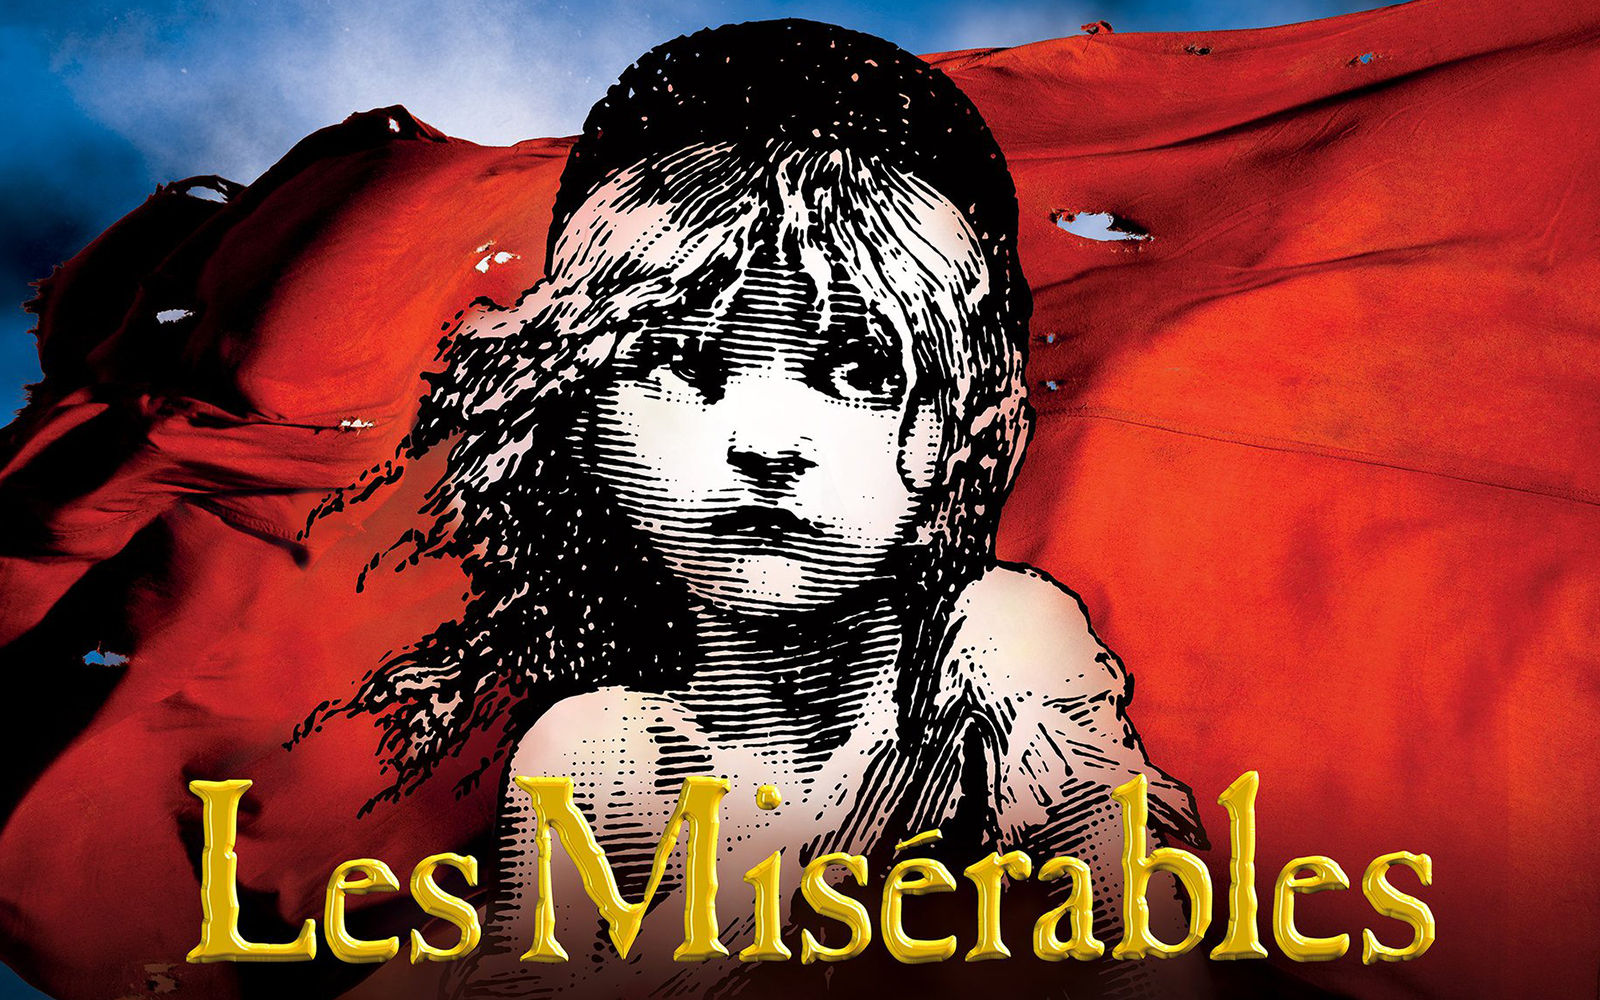 Image of Les Misérables